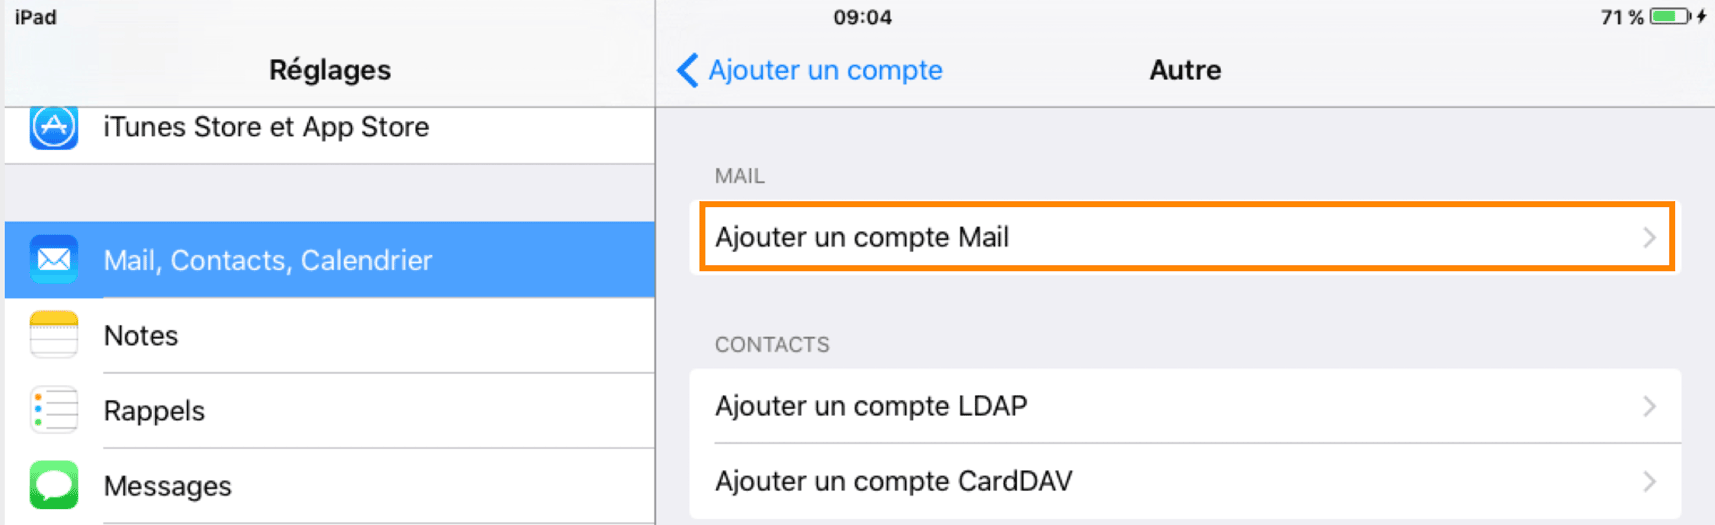 iPad : Ajouter un compte Mail